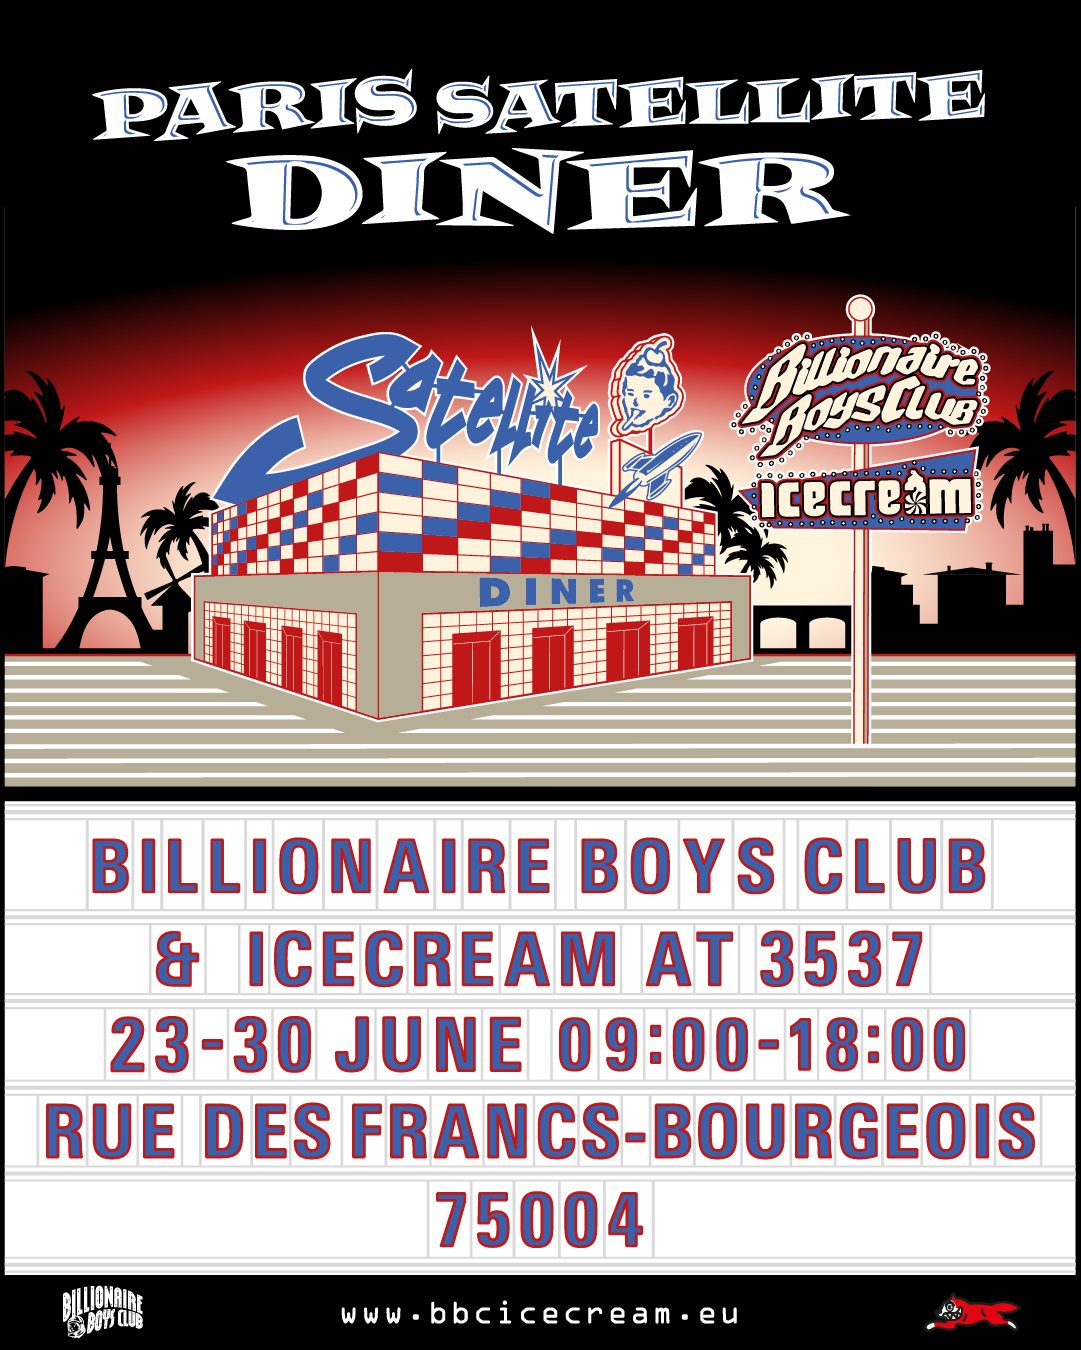 Le pop up store et café Billionaire Boys Club & Icecream au 3537 